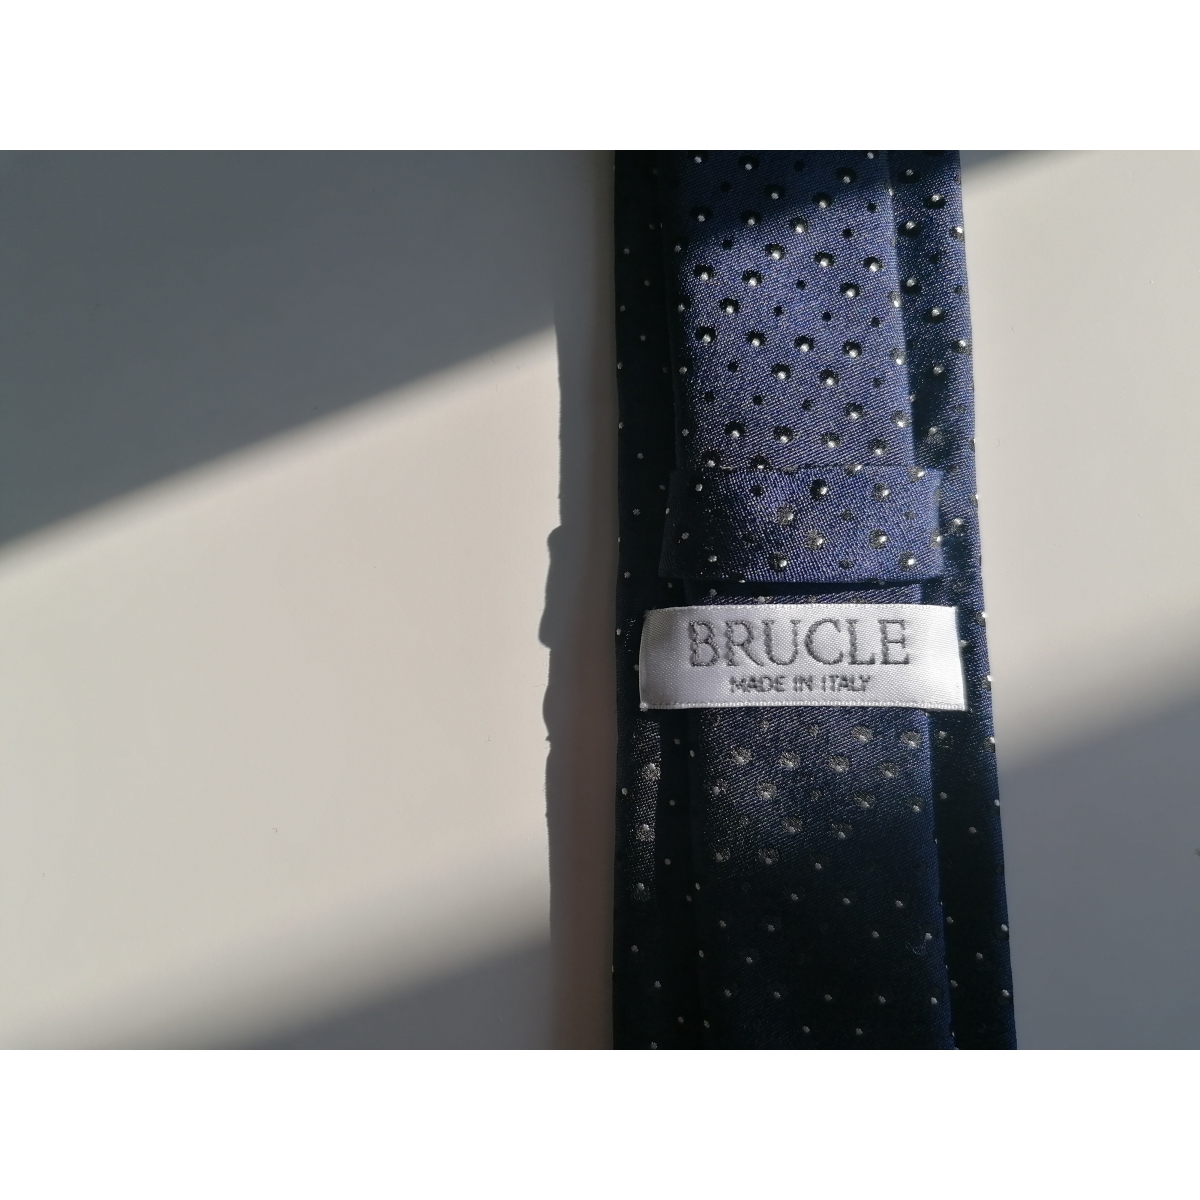 Cravate bleue faux pois en soie jacquard